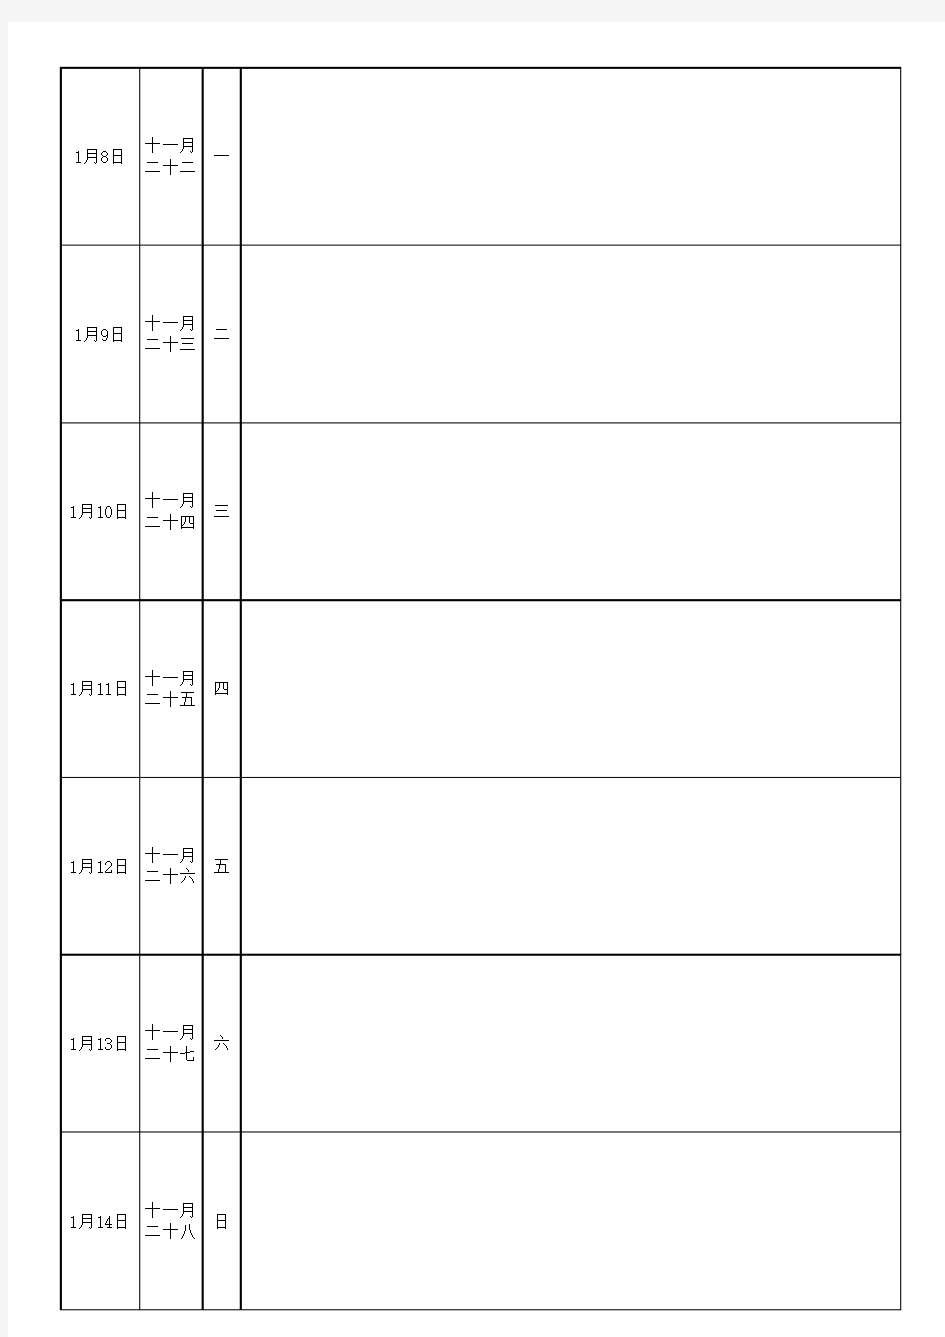 2018日历、周历、年历、工作日志(简洁)(按周排列-A4纸打印)